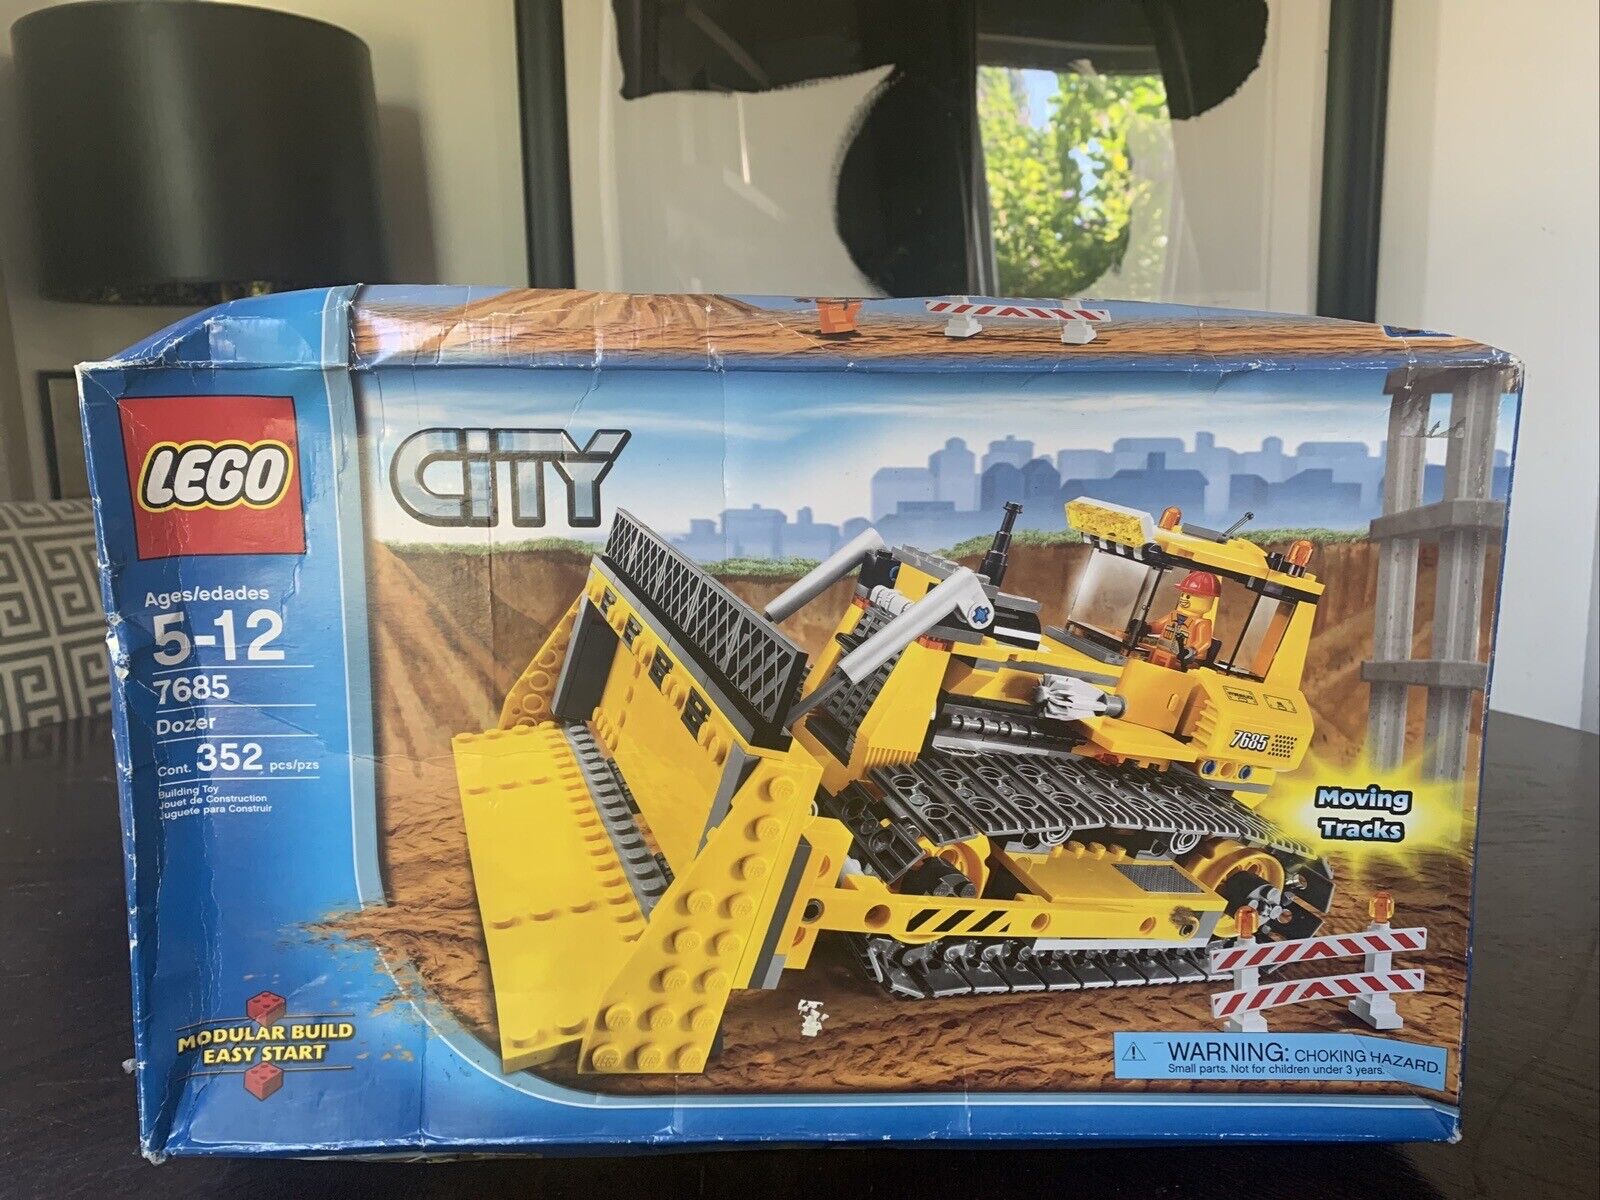 Lego Town City Construction 7685 DOZER New Factory Sealed Box Damaged